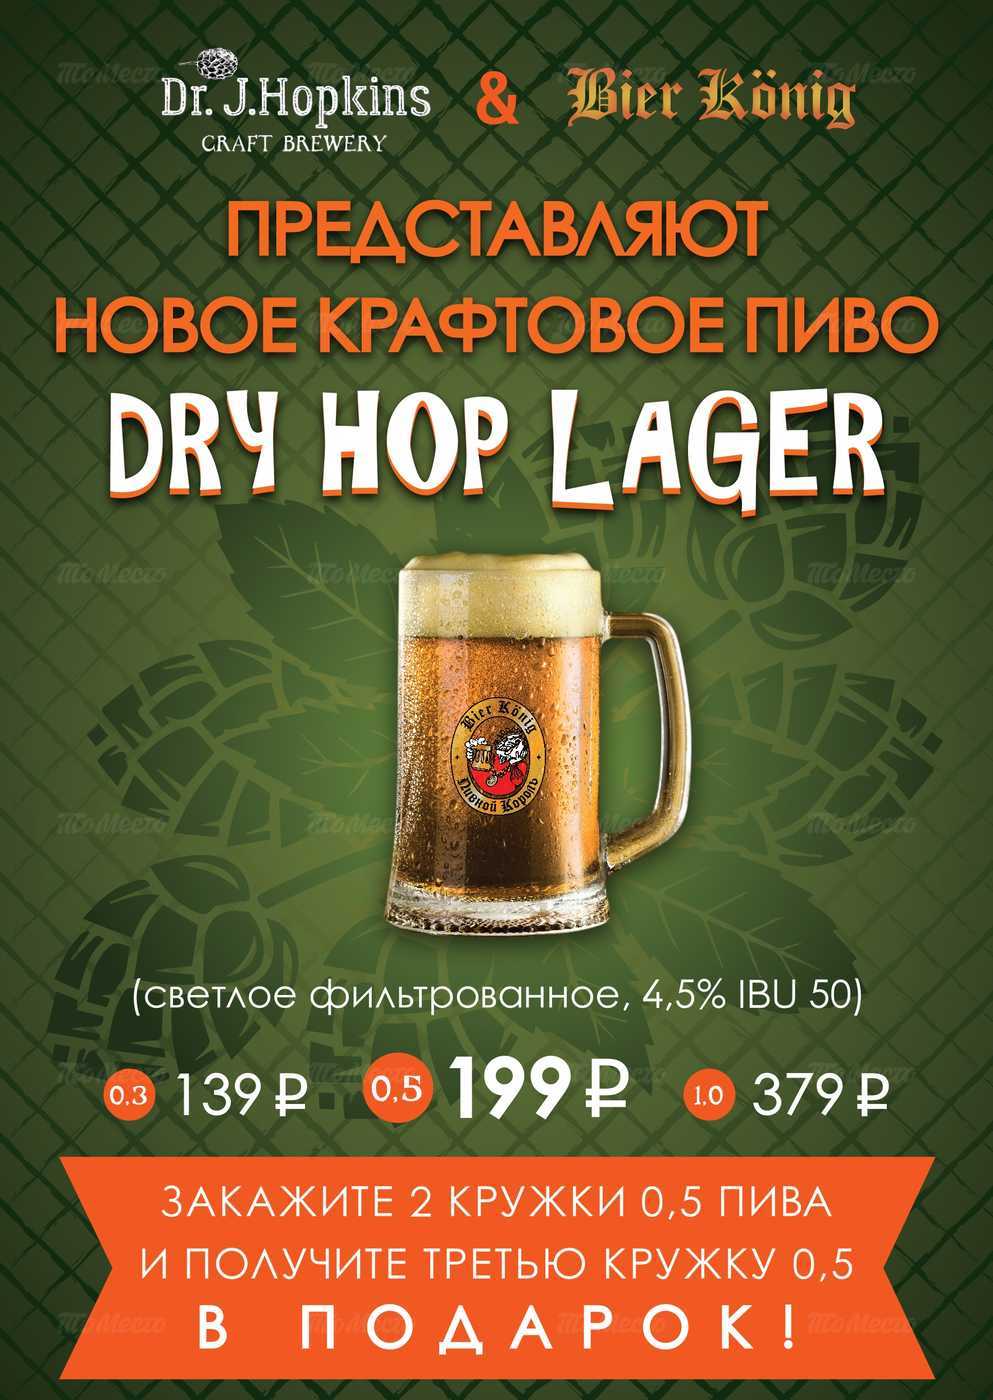 Новое крафтовое пиво Dry Hop Lager